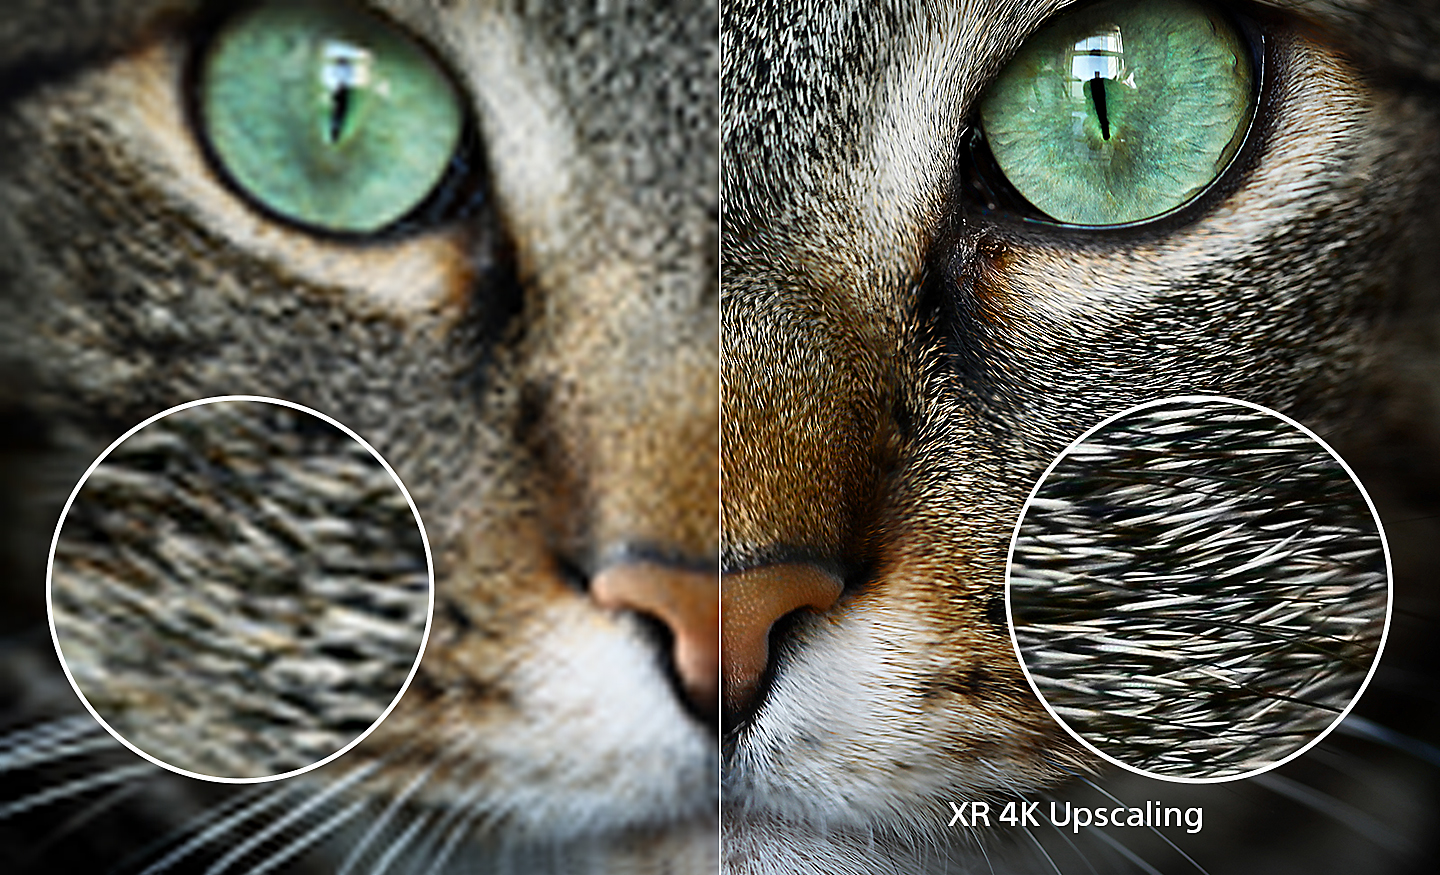 Delt skjermbilde av et kattehode hvor høyre side viser ekstra detaljer etter XR 4K-oppskalering